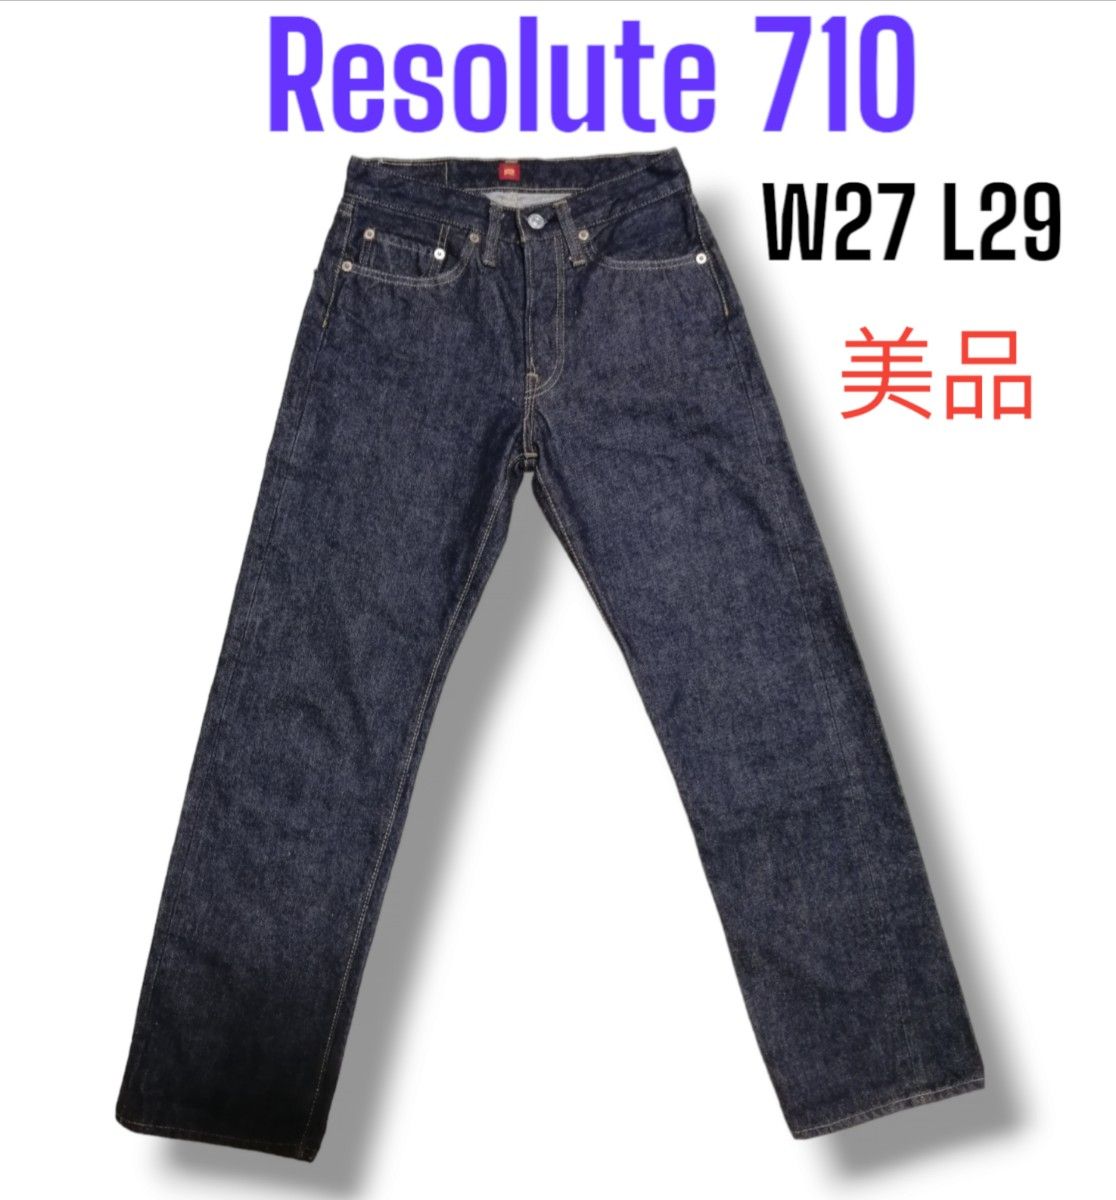 【美品】Resolute リゾルト 710 W27 L29 セルビッチ デニム ジーンズ